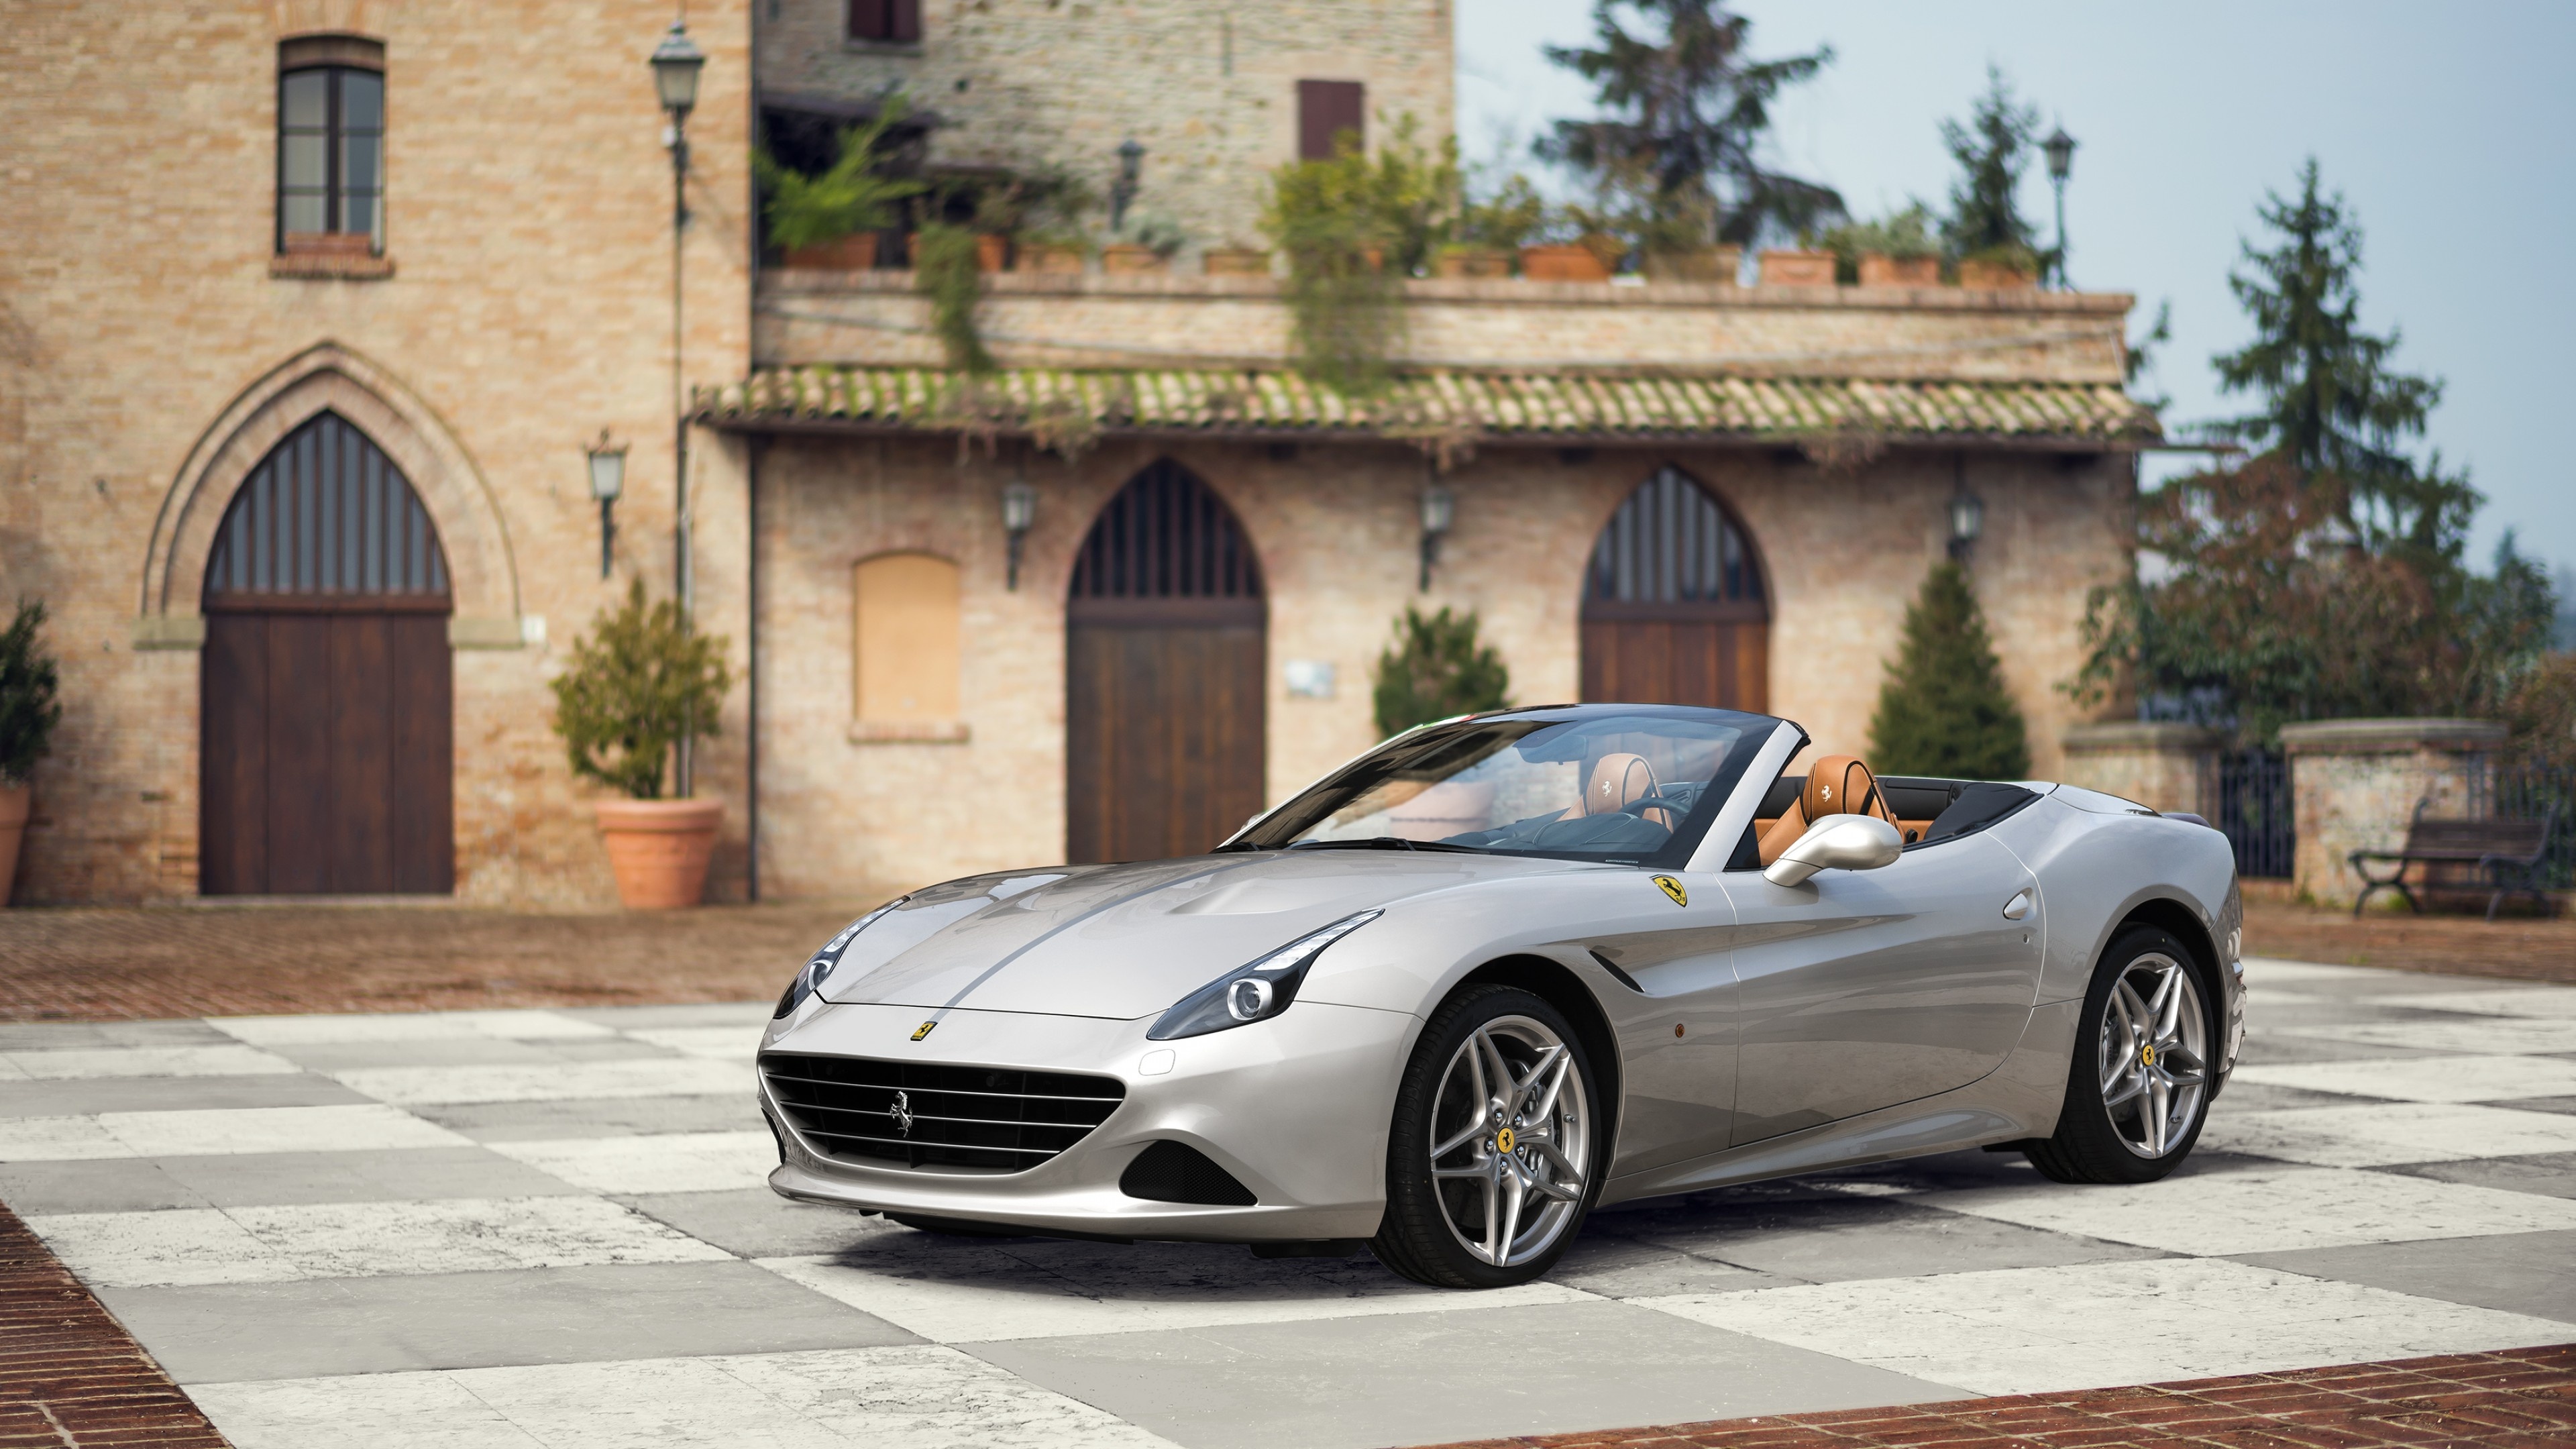 Ferrari California T, Auto Shanghai 2015, Tailor-made luxury, Exquisite design, 3840x2160 4K Desktop